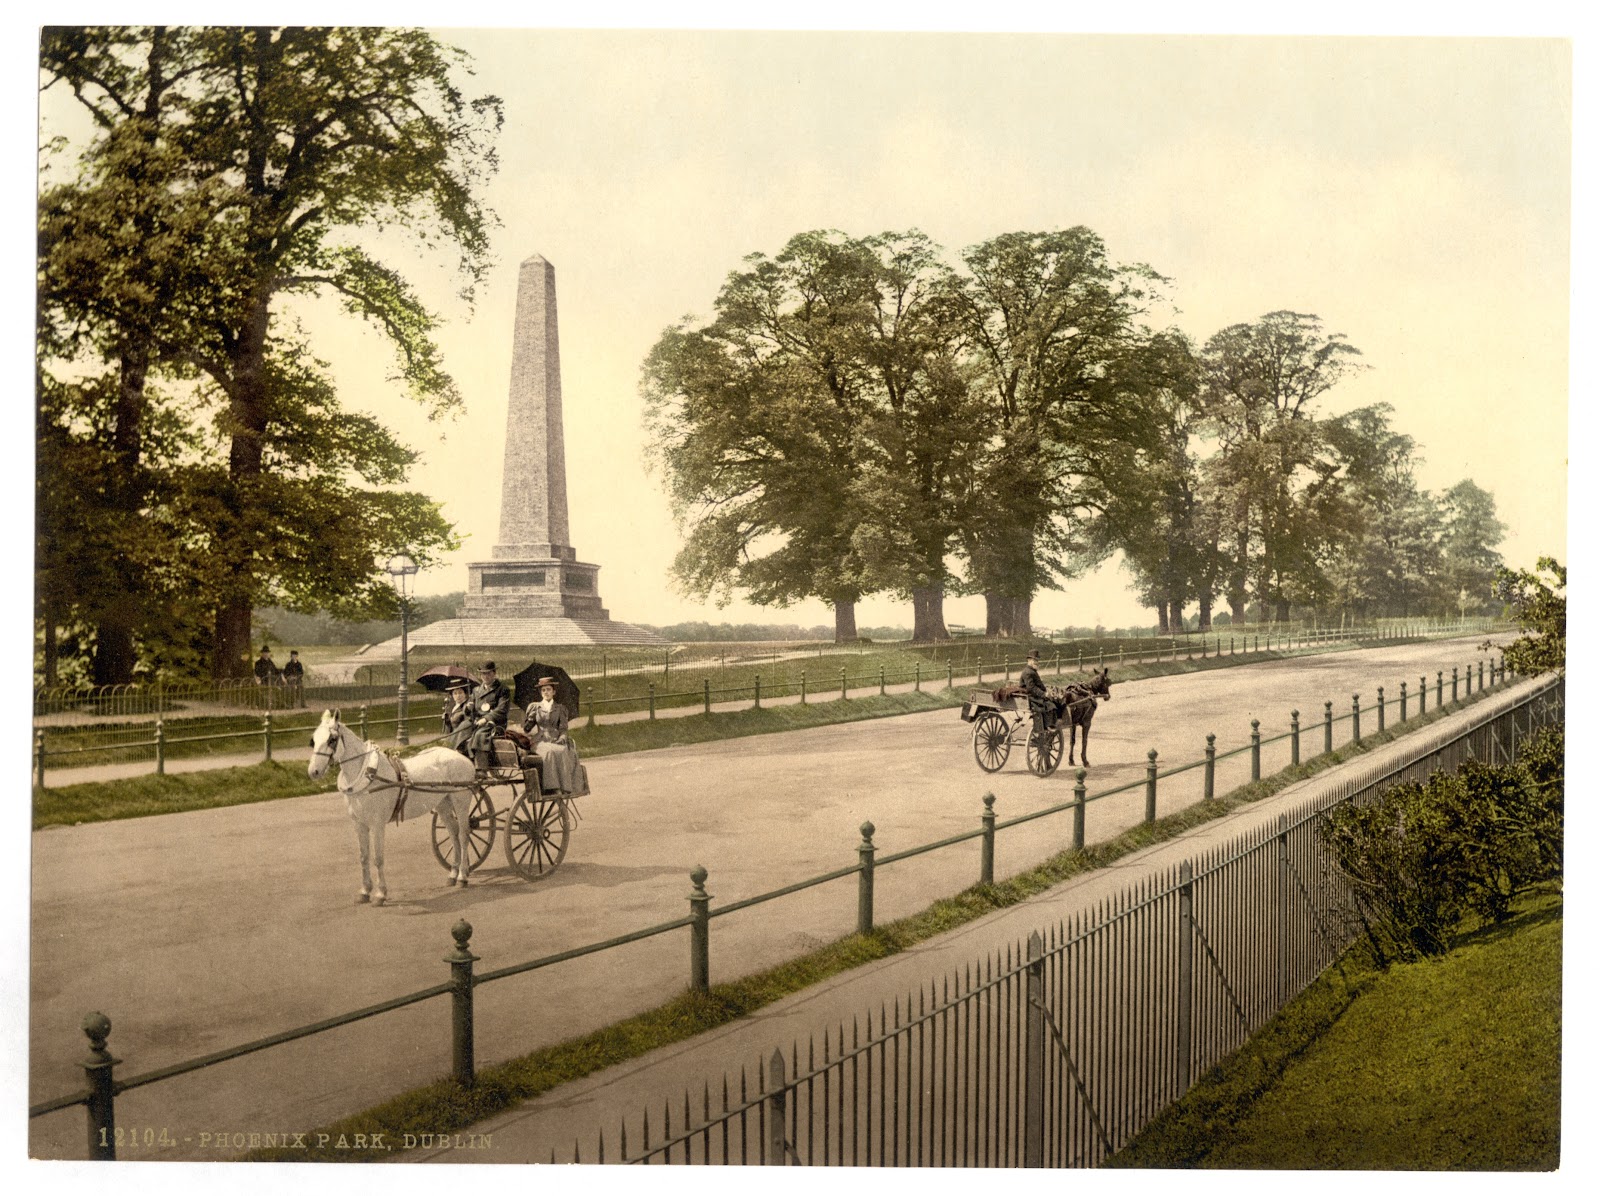 ダブリン市のフェニックスパークのウェリントン記念碑が見える道に二台の二輪馬車が停まっている